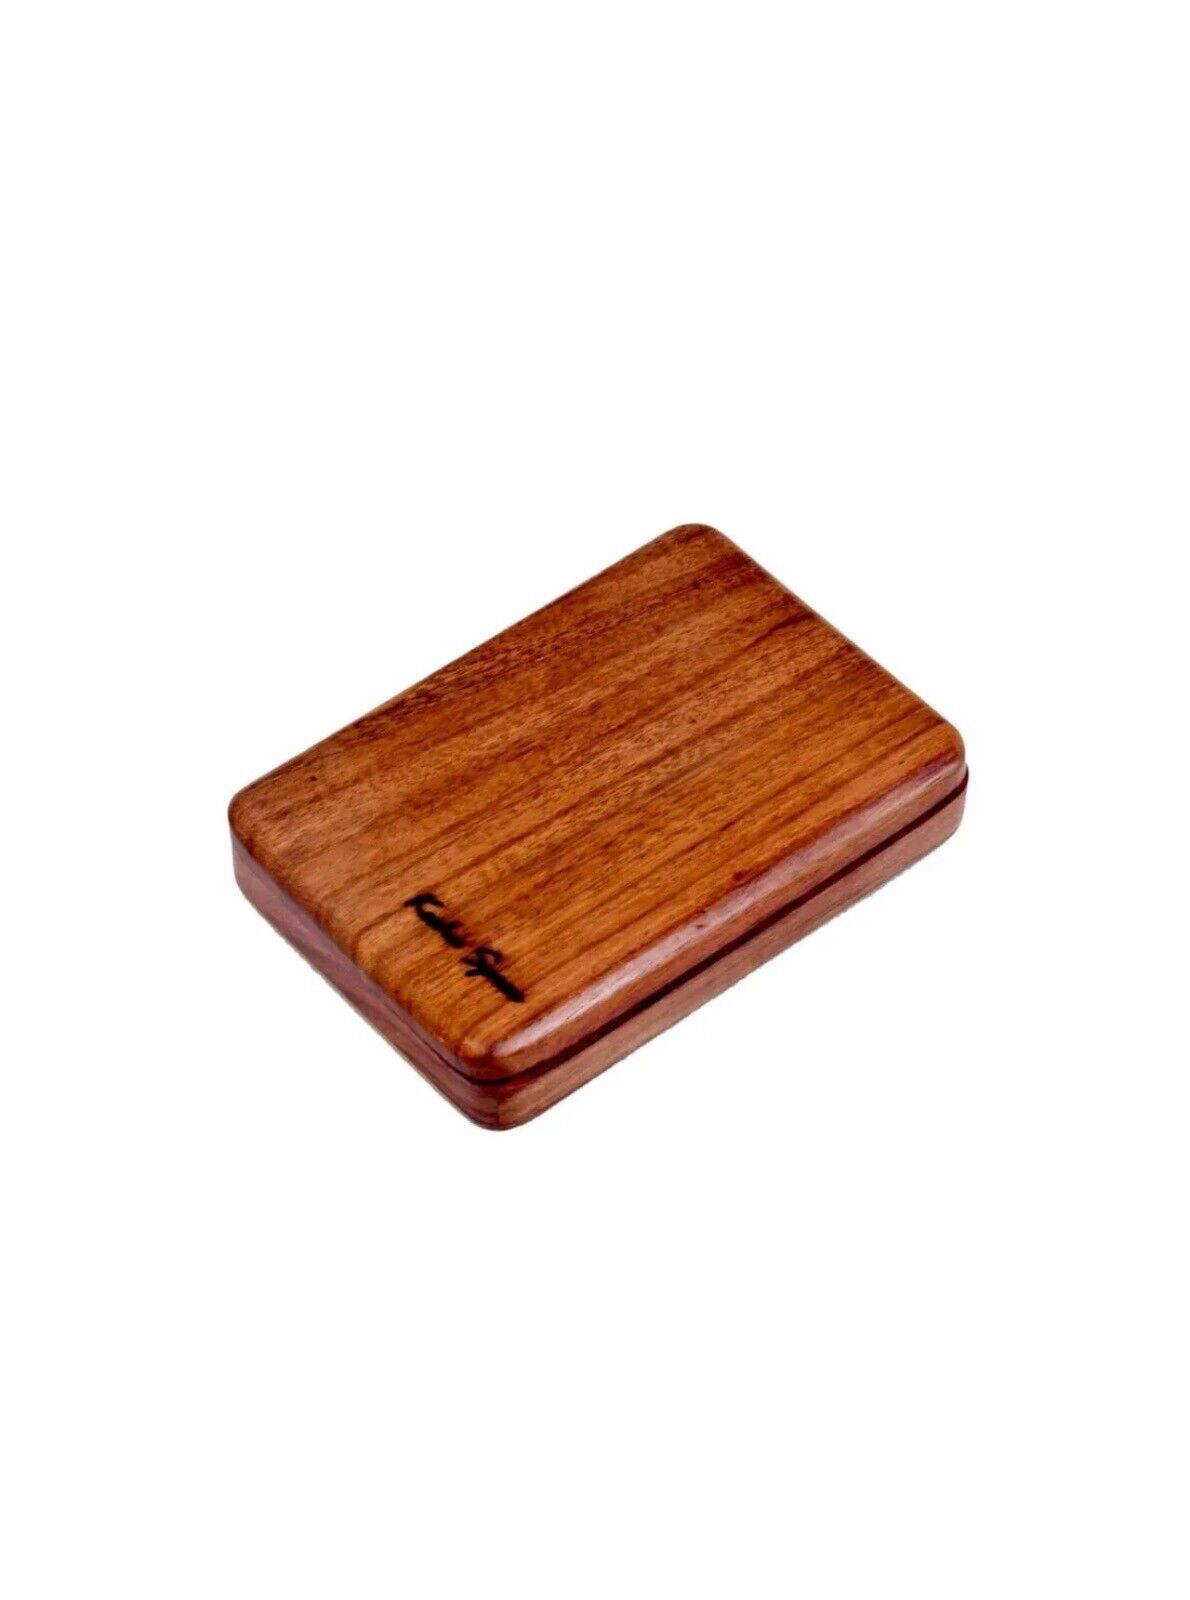 wooden pocket size business card or cigarette case holder